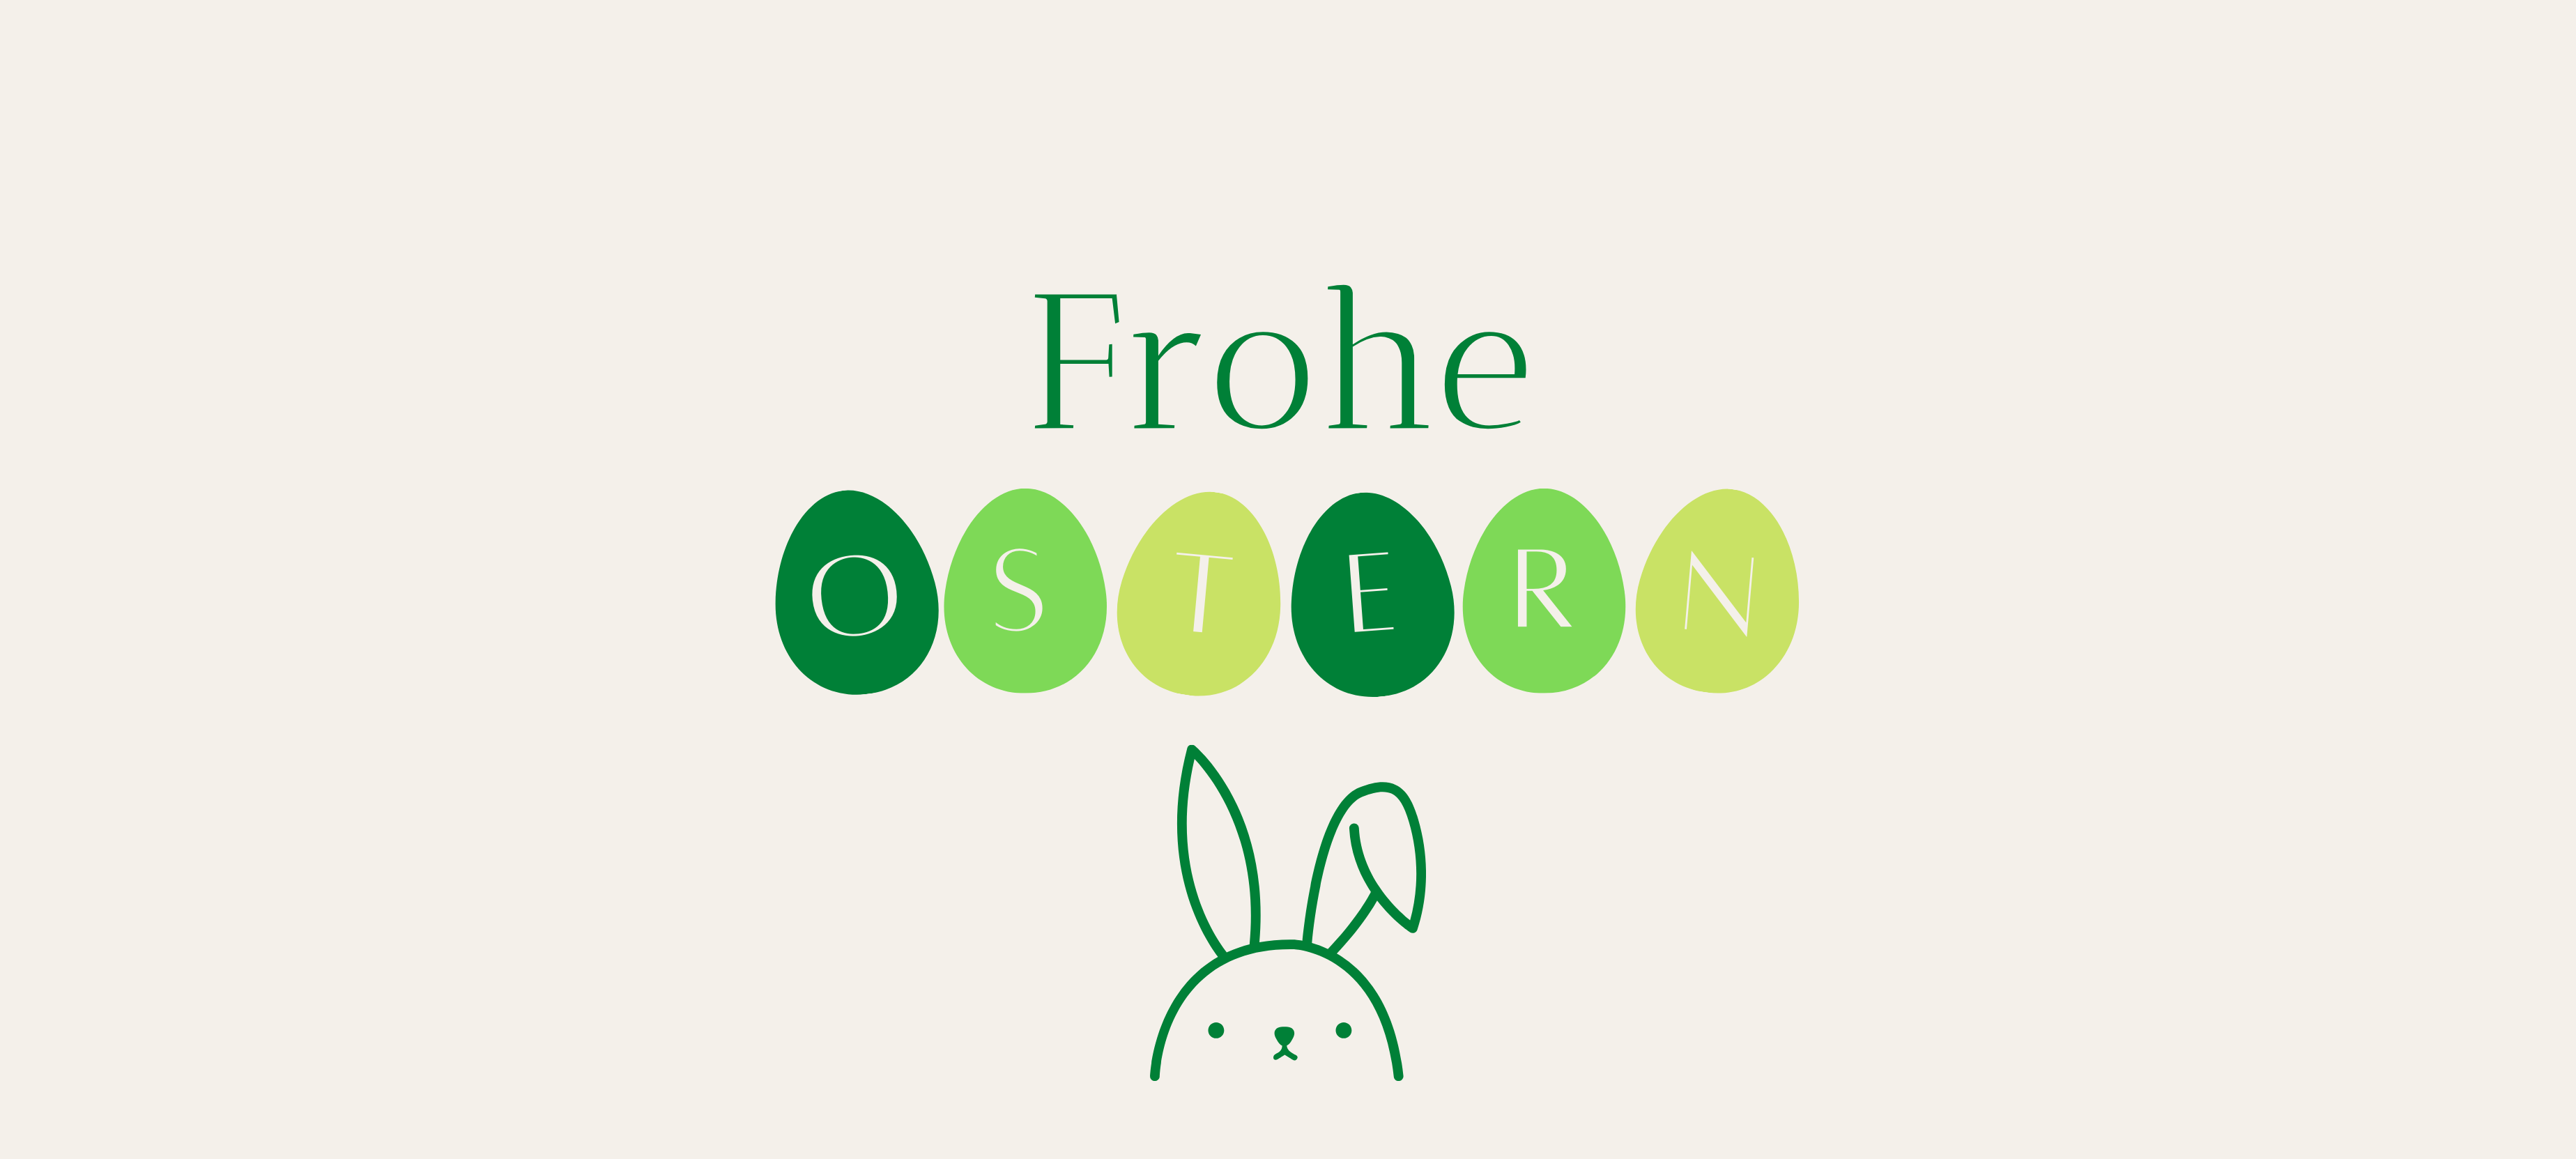 Wir wünschen euch Frohe Ostern :)